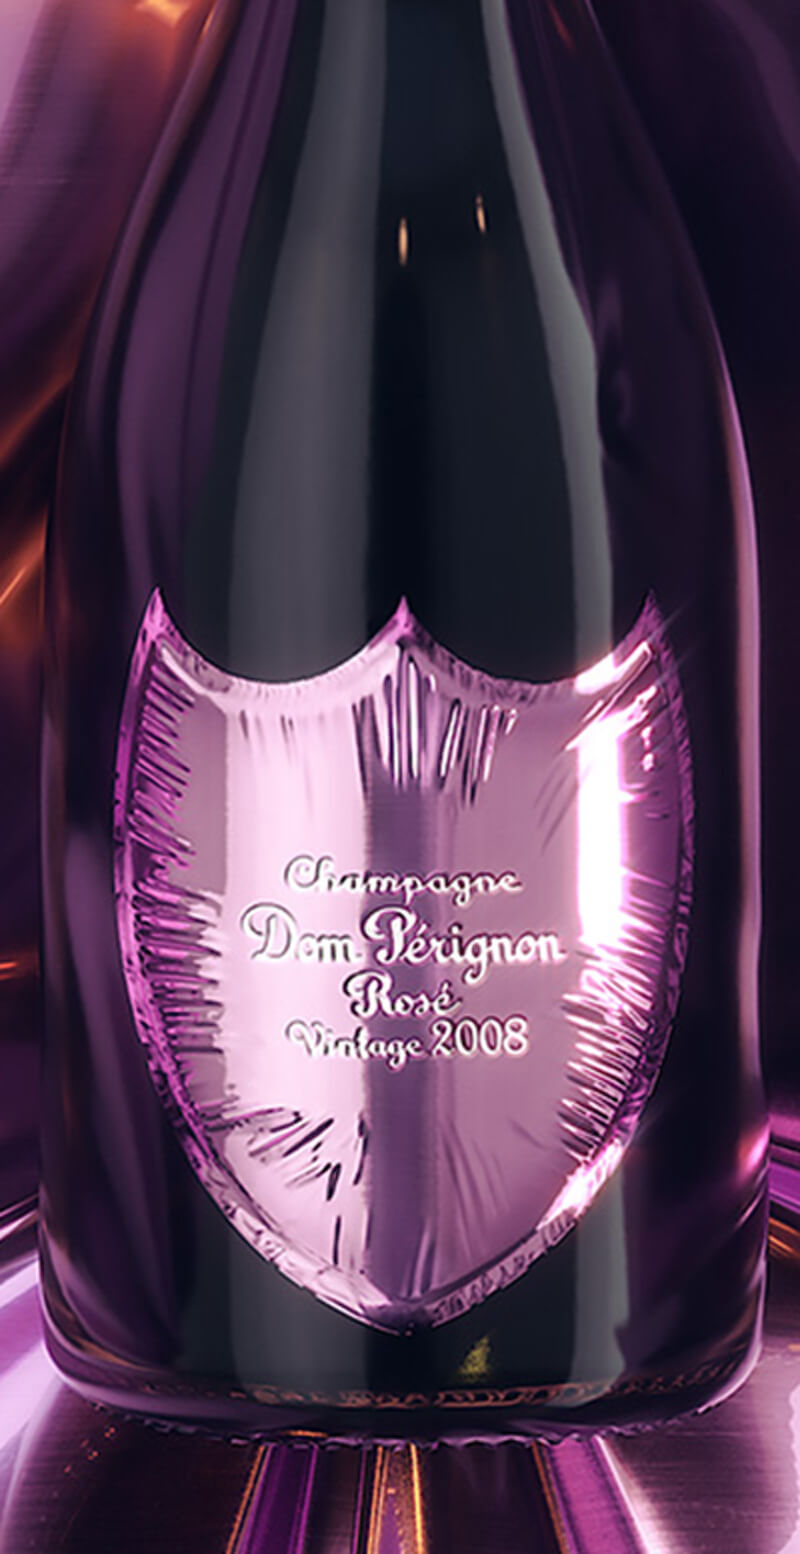 Champagne Dom Pérignon Rosé 2008 - Edition limitée selon le design créé par Lady Gaga